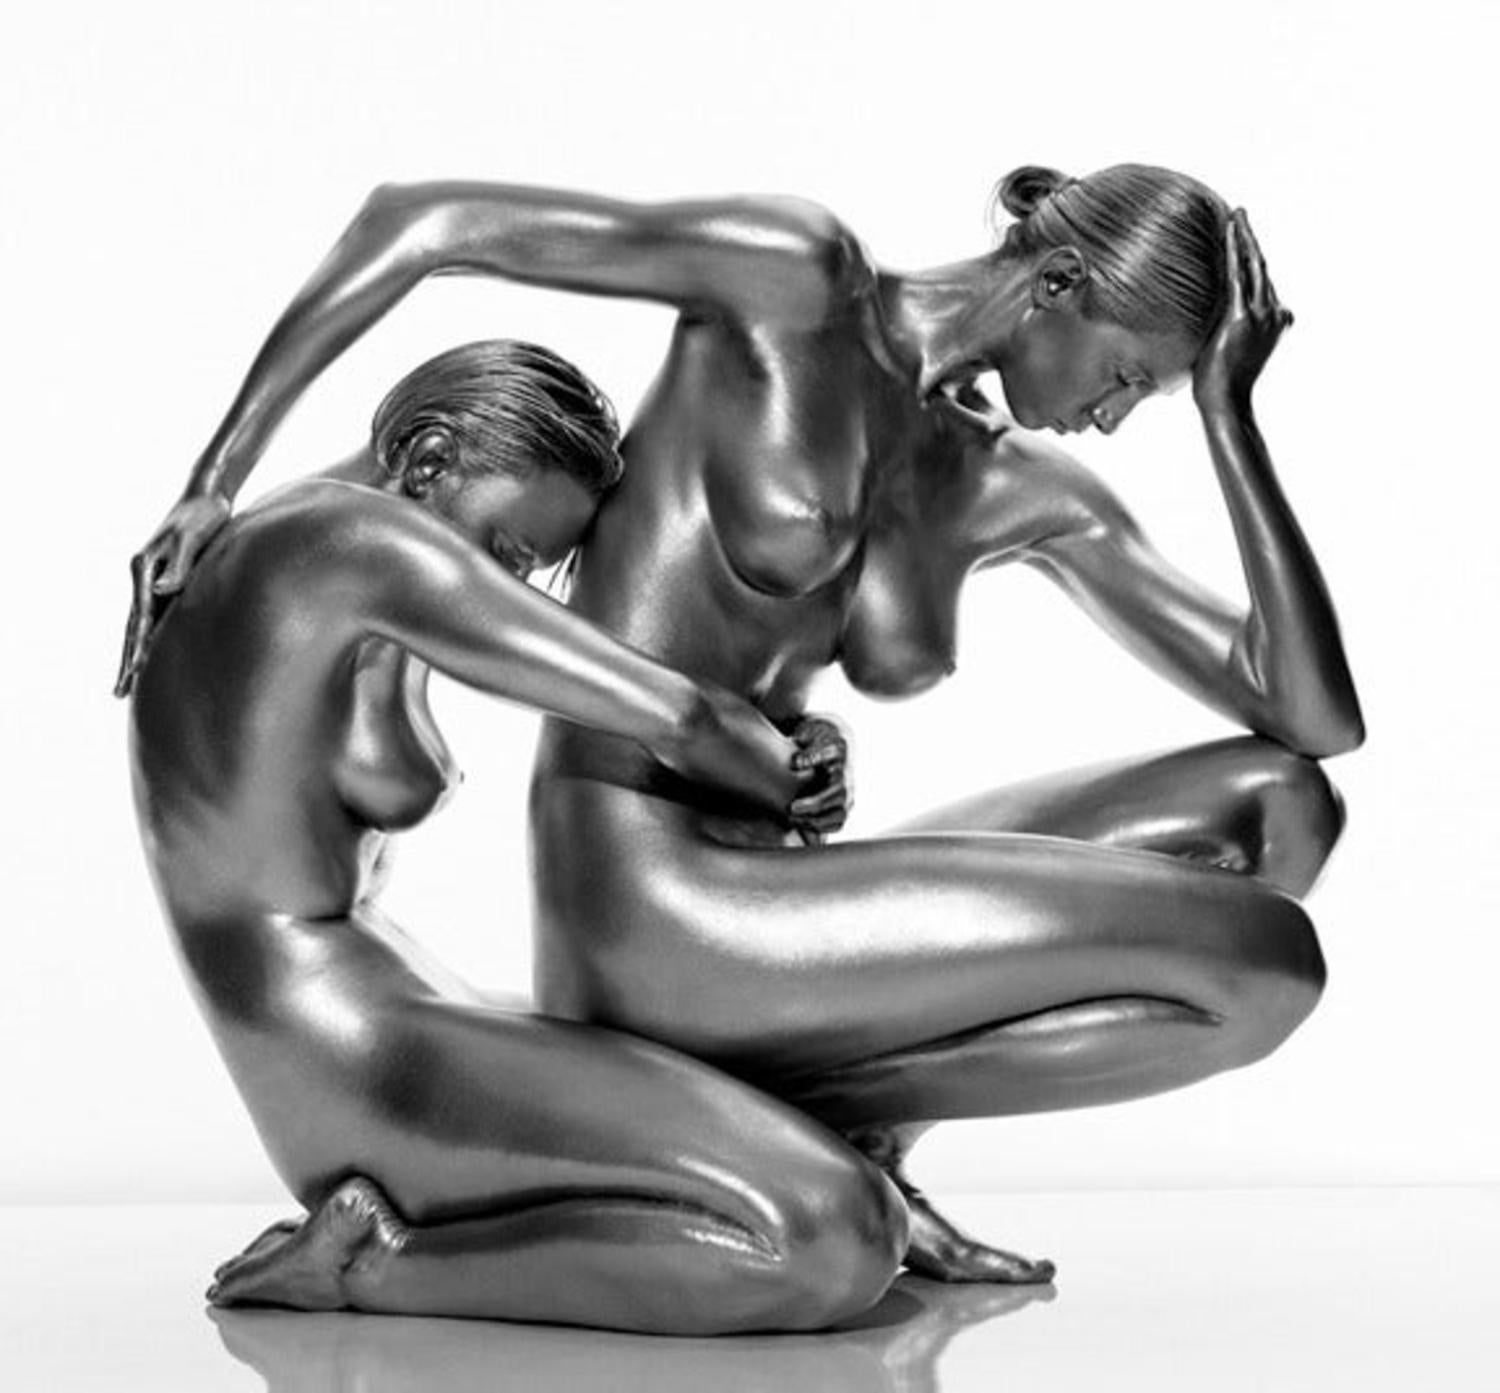 Demeter et Perséphone : 2 femmes s'embrassant l'une contre l'autre, nues, peau argentée - Photograph de Guido Argentini